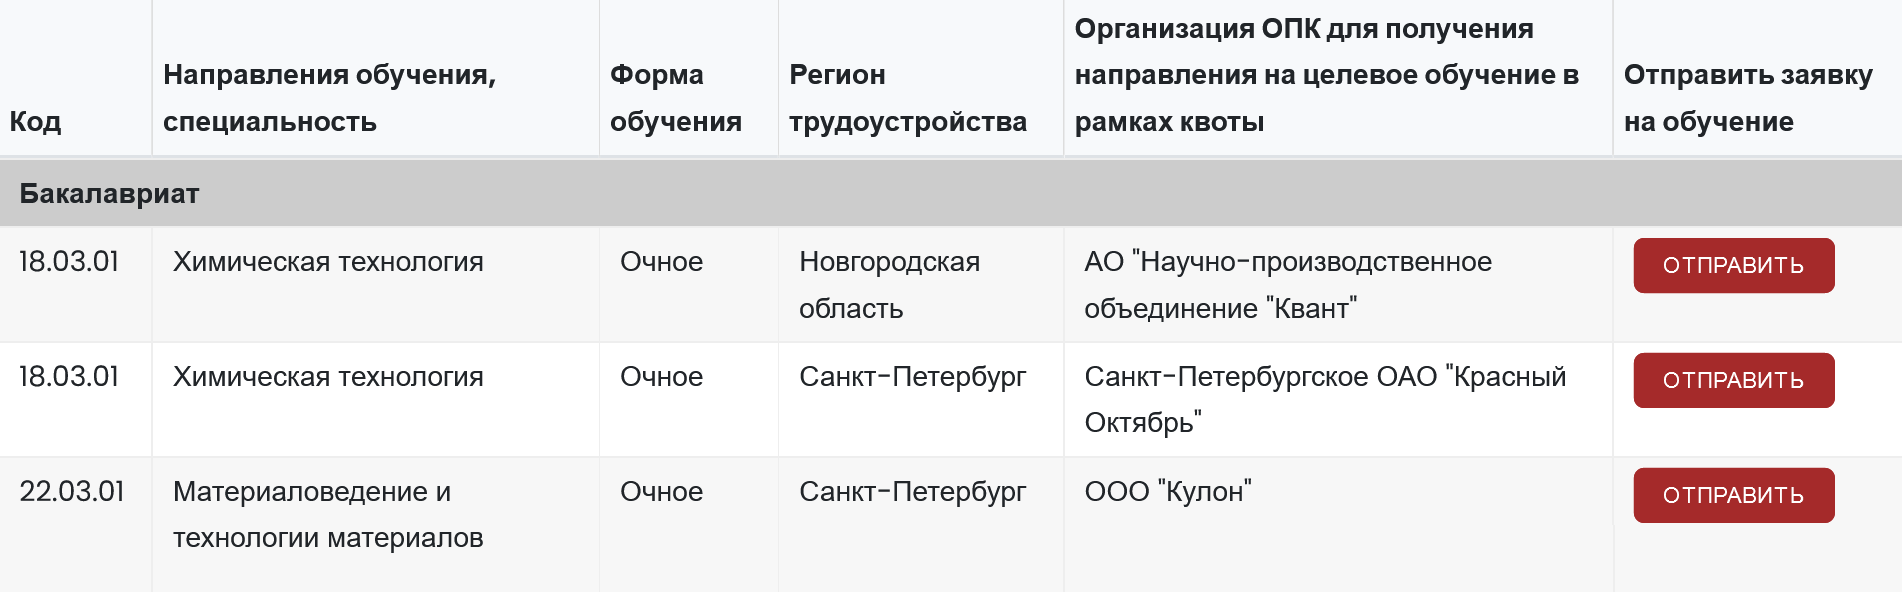 Заказчики целевого обучения на 2022 год в СПбГТИ. Отправляла заявки через эту форму. Источник: fkc-opk.ru